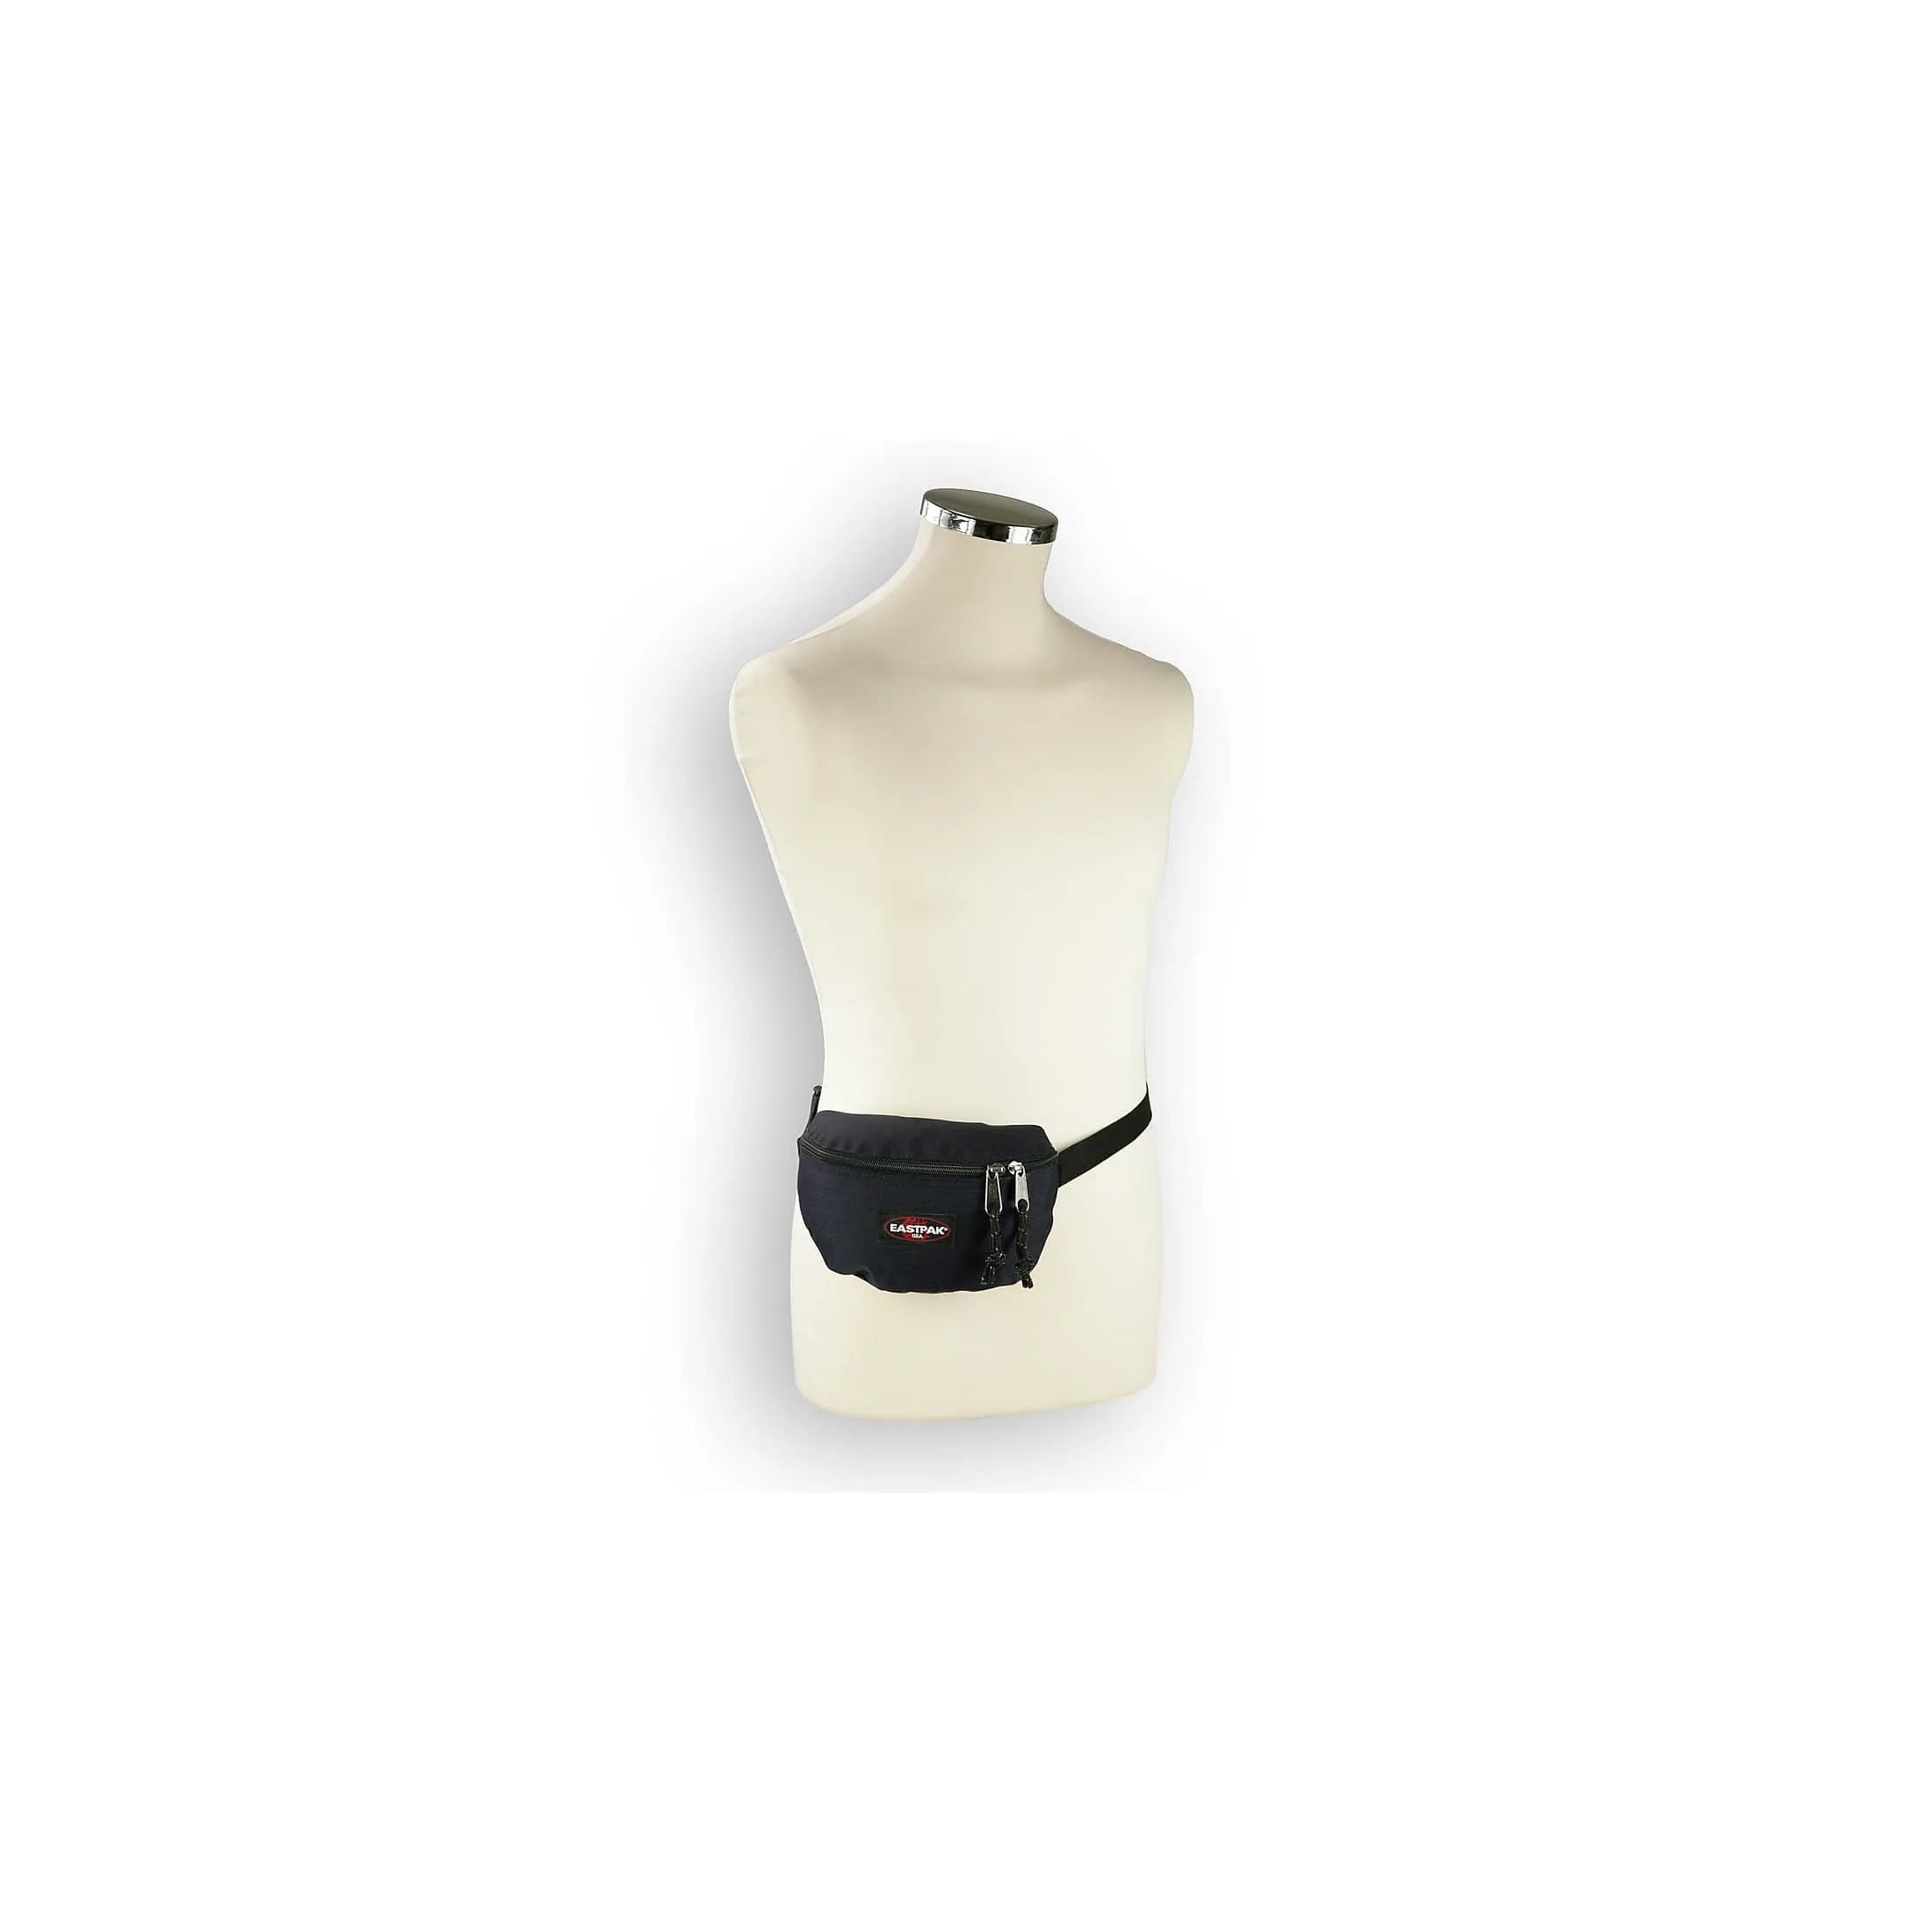 Eastpak Authentic Springer Belt Bag 23 cm - SR+ Grey